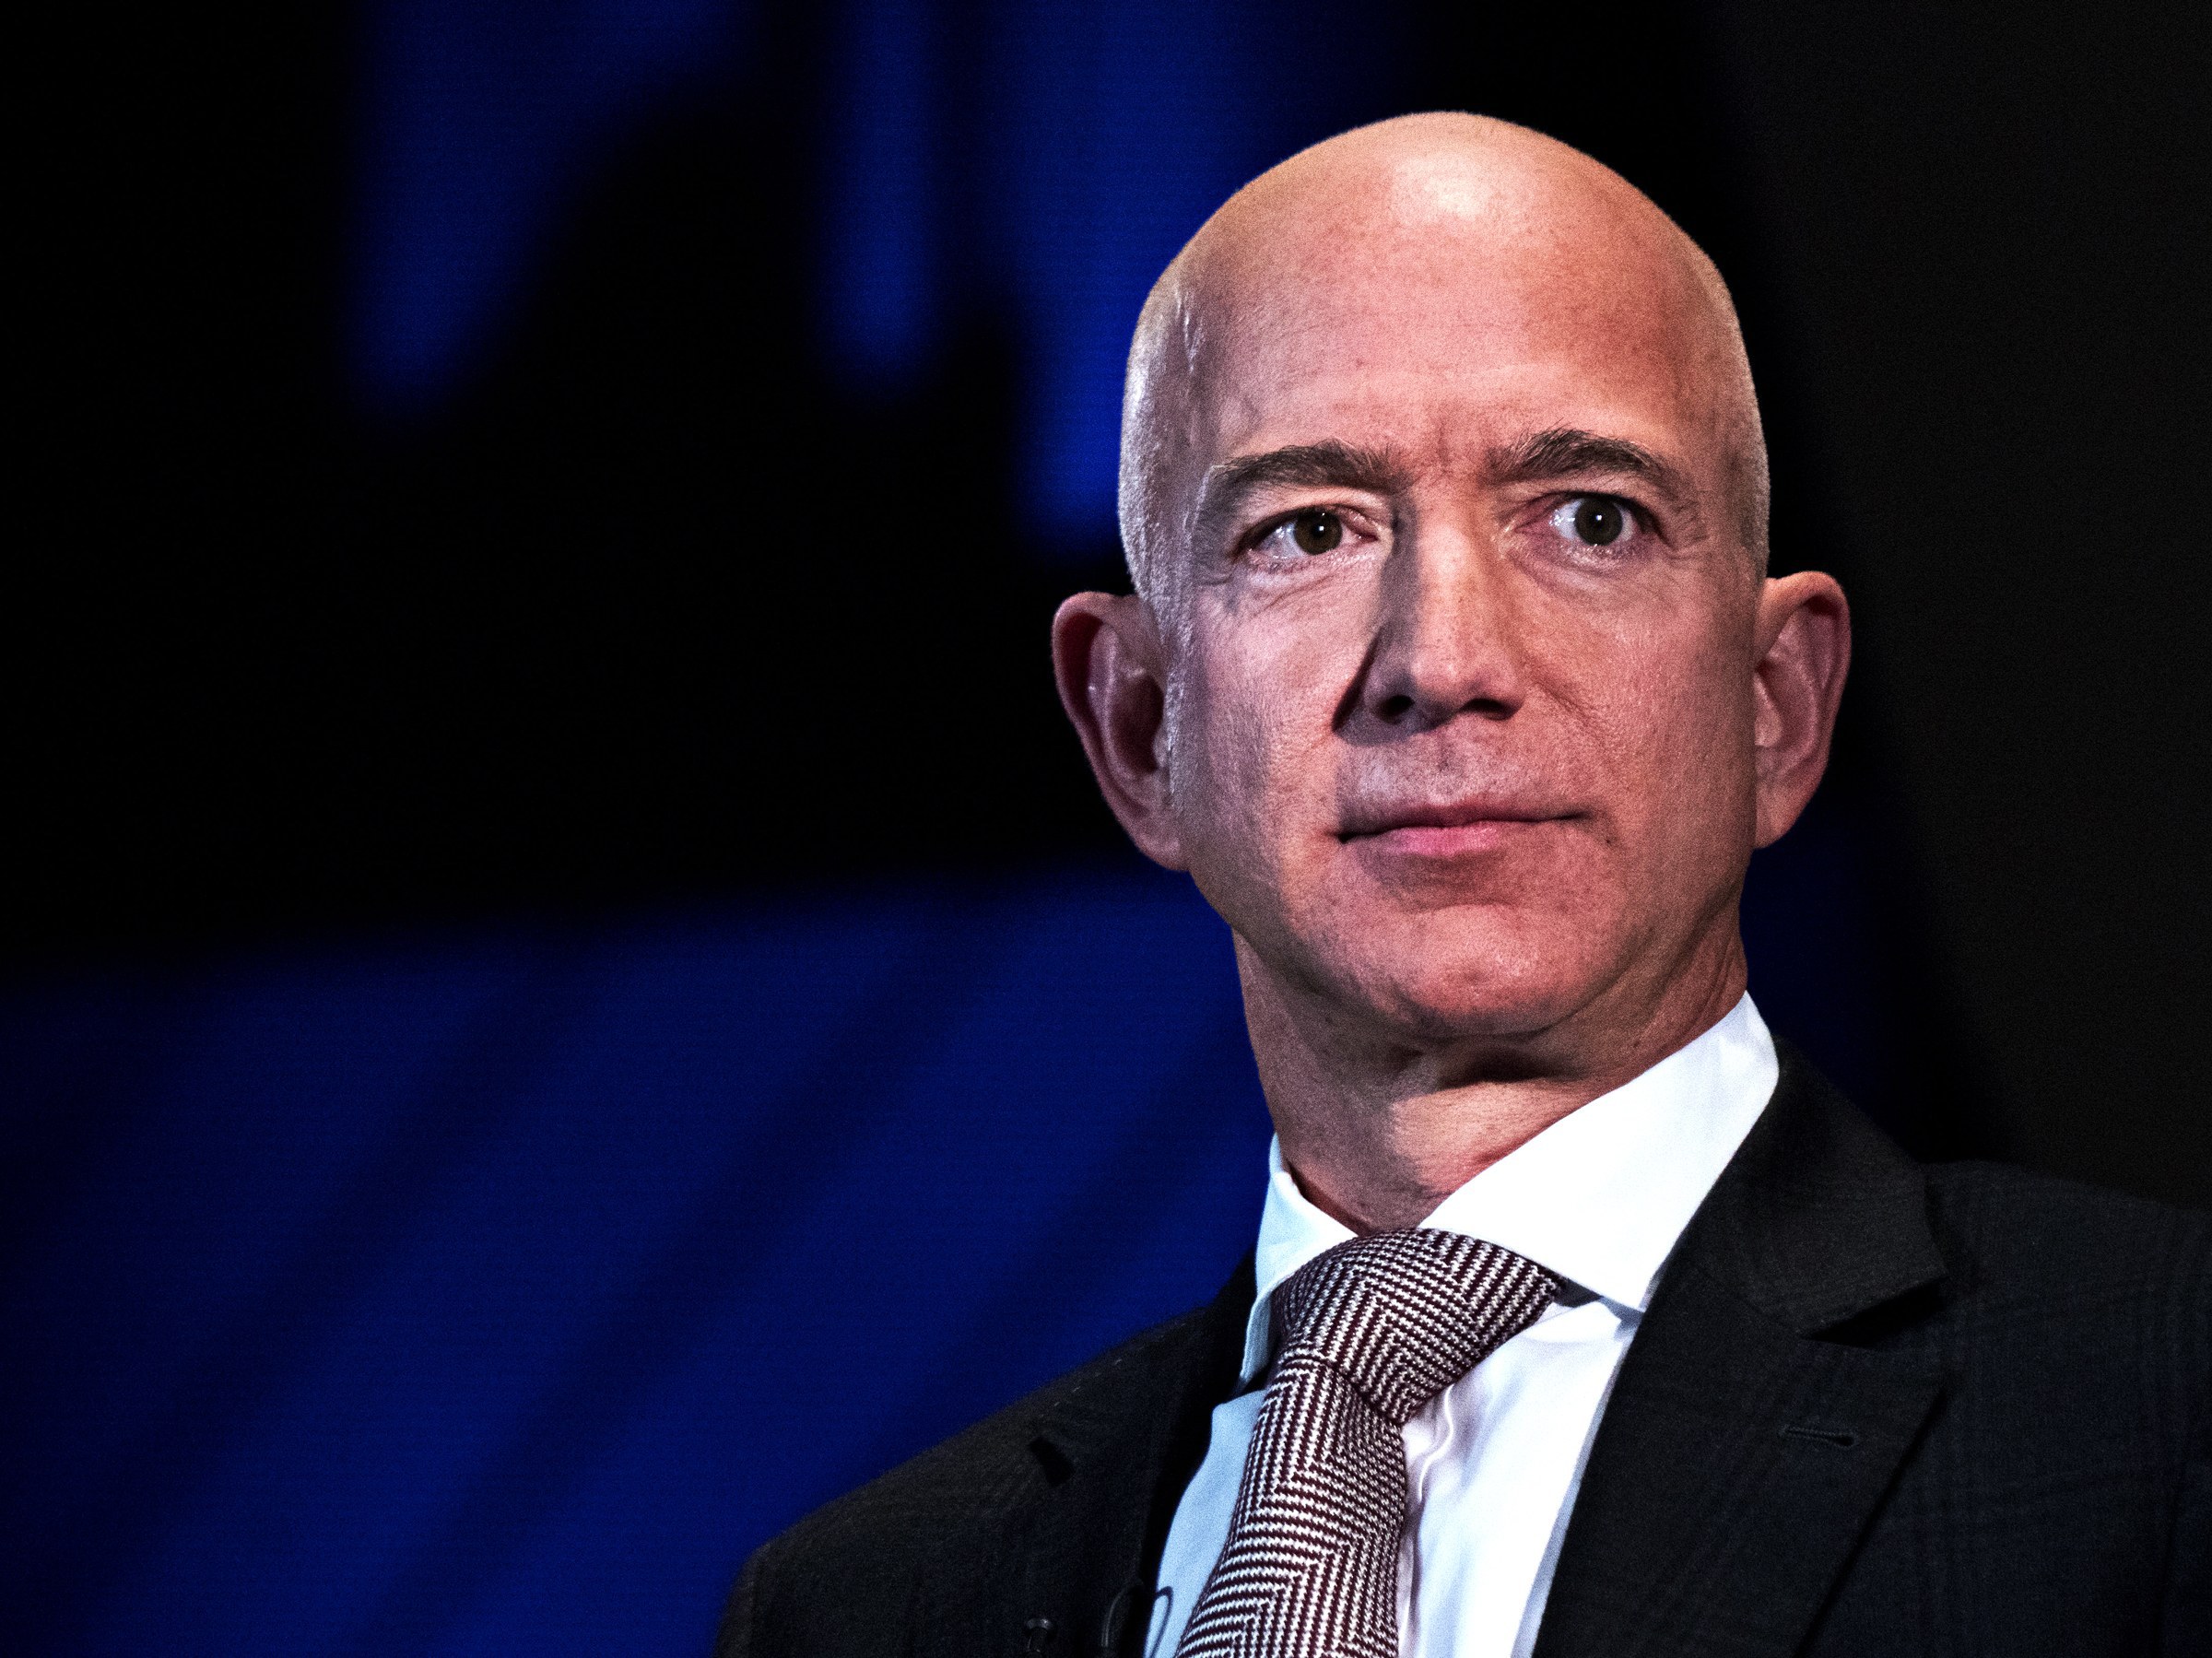 Jeff Bezos, cel mai bogat om din lume, îl acuză pe proprietarul tabloidului National Enquirer de şantaj, spunând că acesta l-a ameninţat că va face publice "fotografii intime"